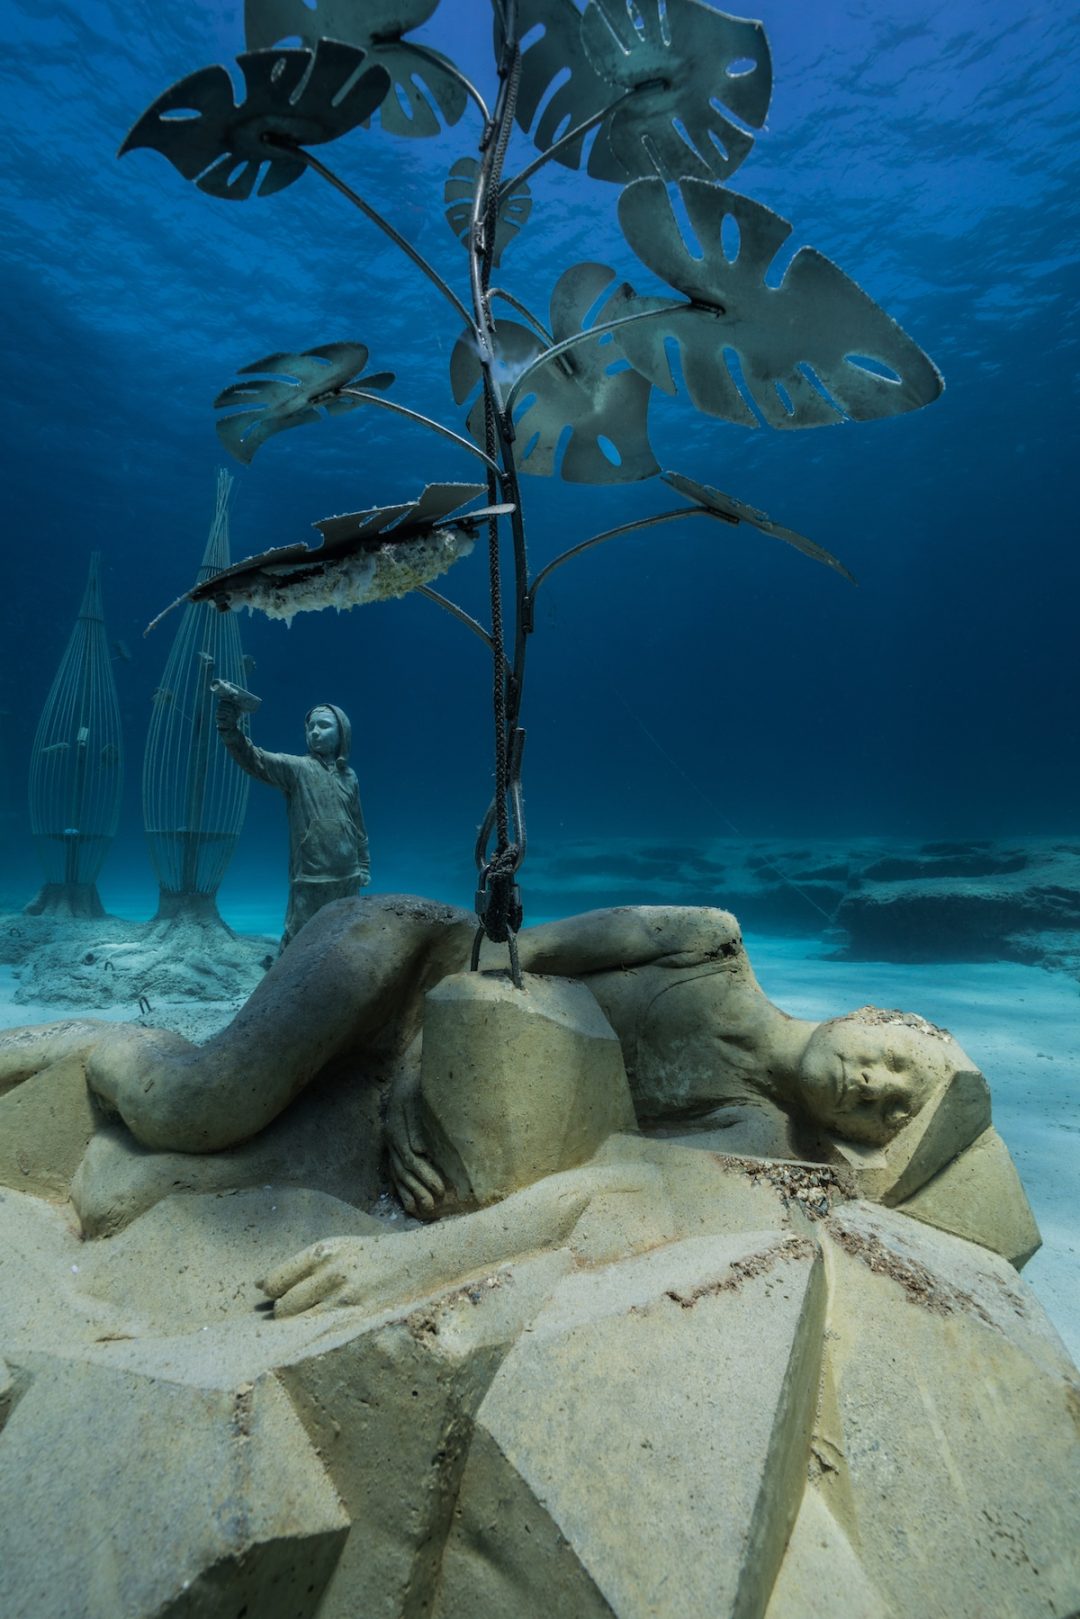 Una “foresta dei sogni”: lo spettacolare museo sottomarino sui fondali di Cipro